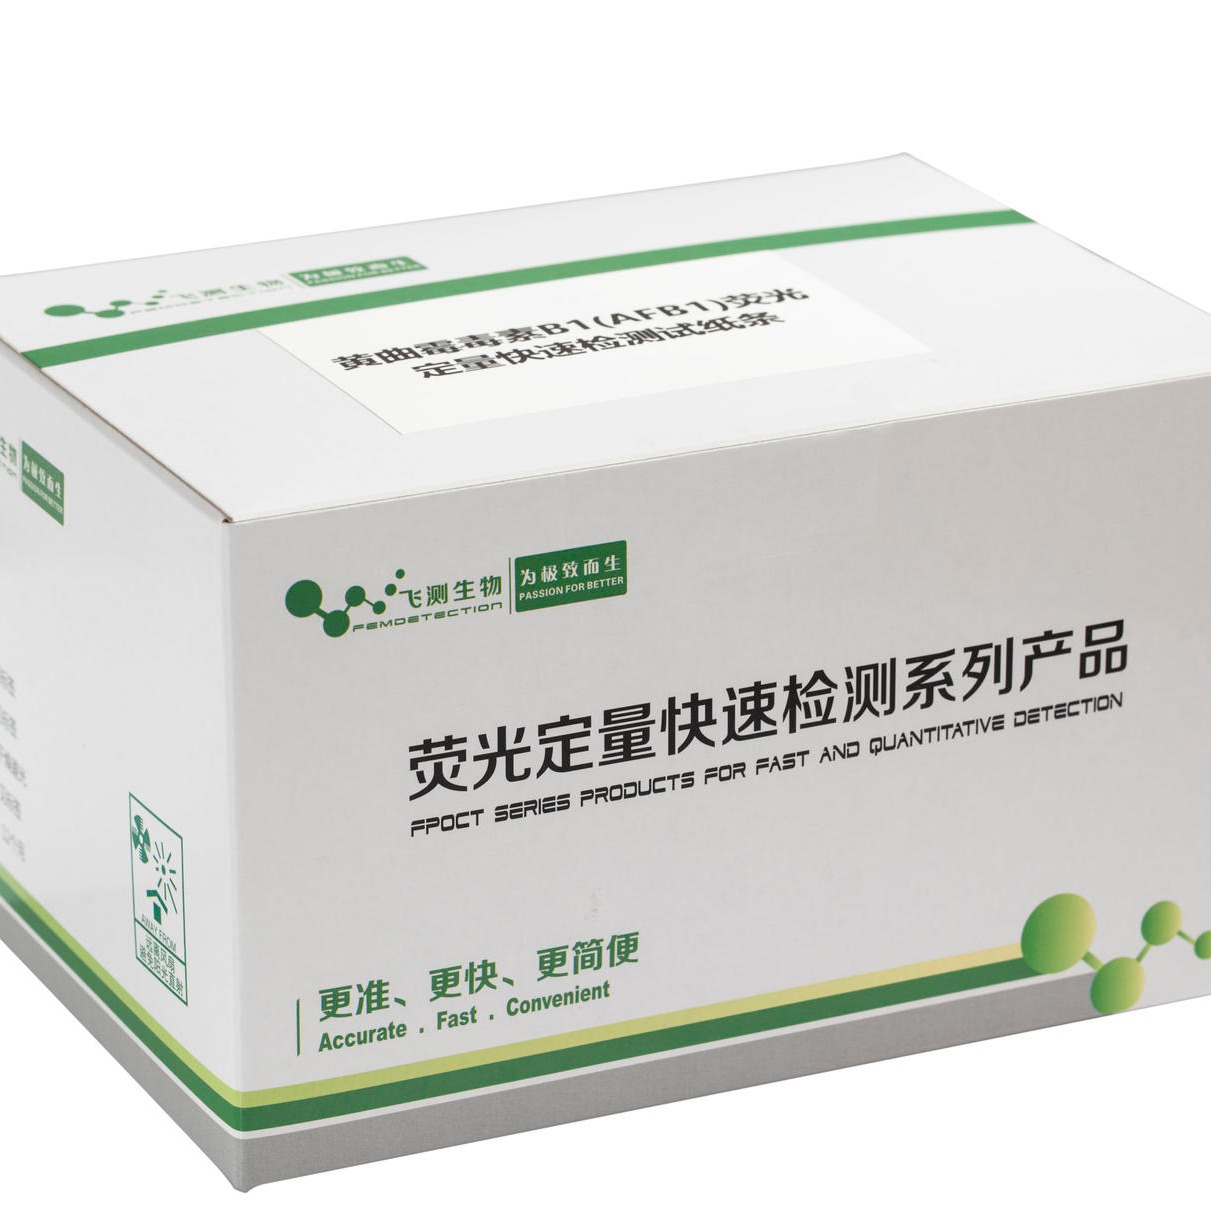 上海飞测FAFB01 黄曲霉毒素B1荧光定量快速检测试纸条 -黄曲霉毒素快速检测试纸条，快速简便准确，饲料专用